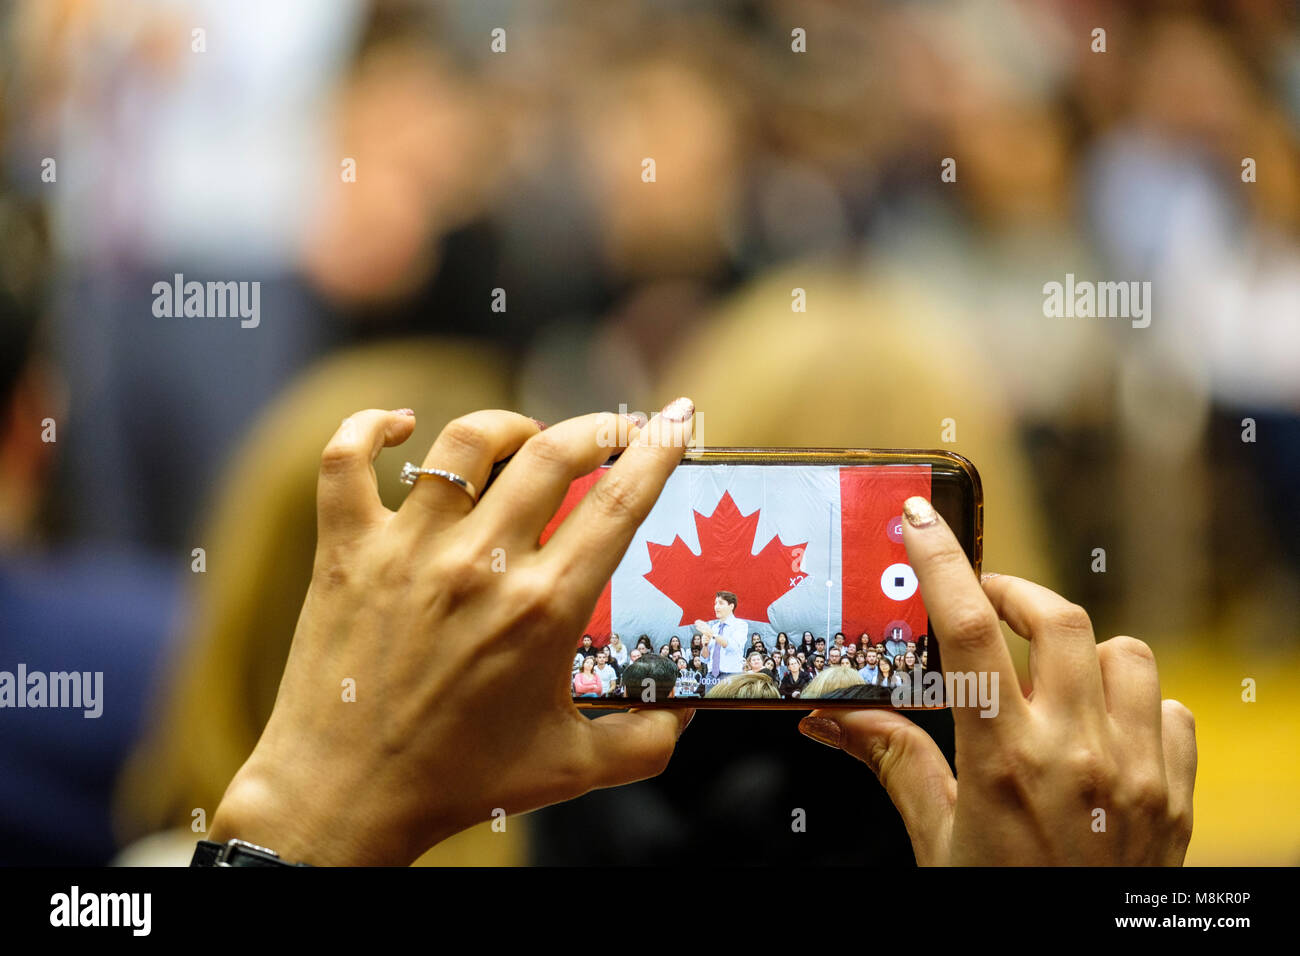 Hände von einer Frau mit einem Handy ein Bild von Justin Trudeau,  Premierminister von Kanada, einem Town hall Meeting in London, Ontario,  Kanada Stockfotografie - Alamy